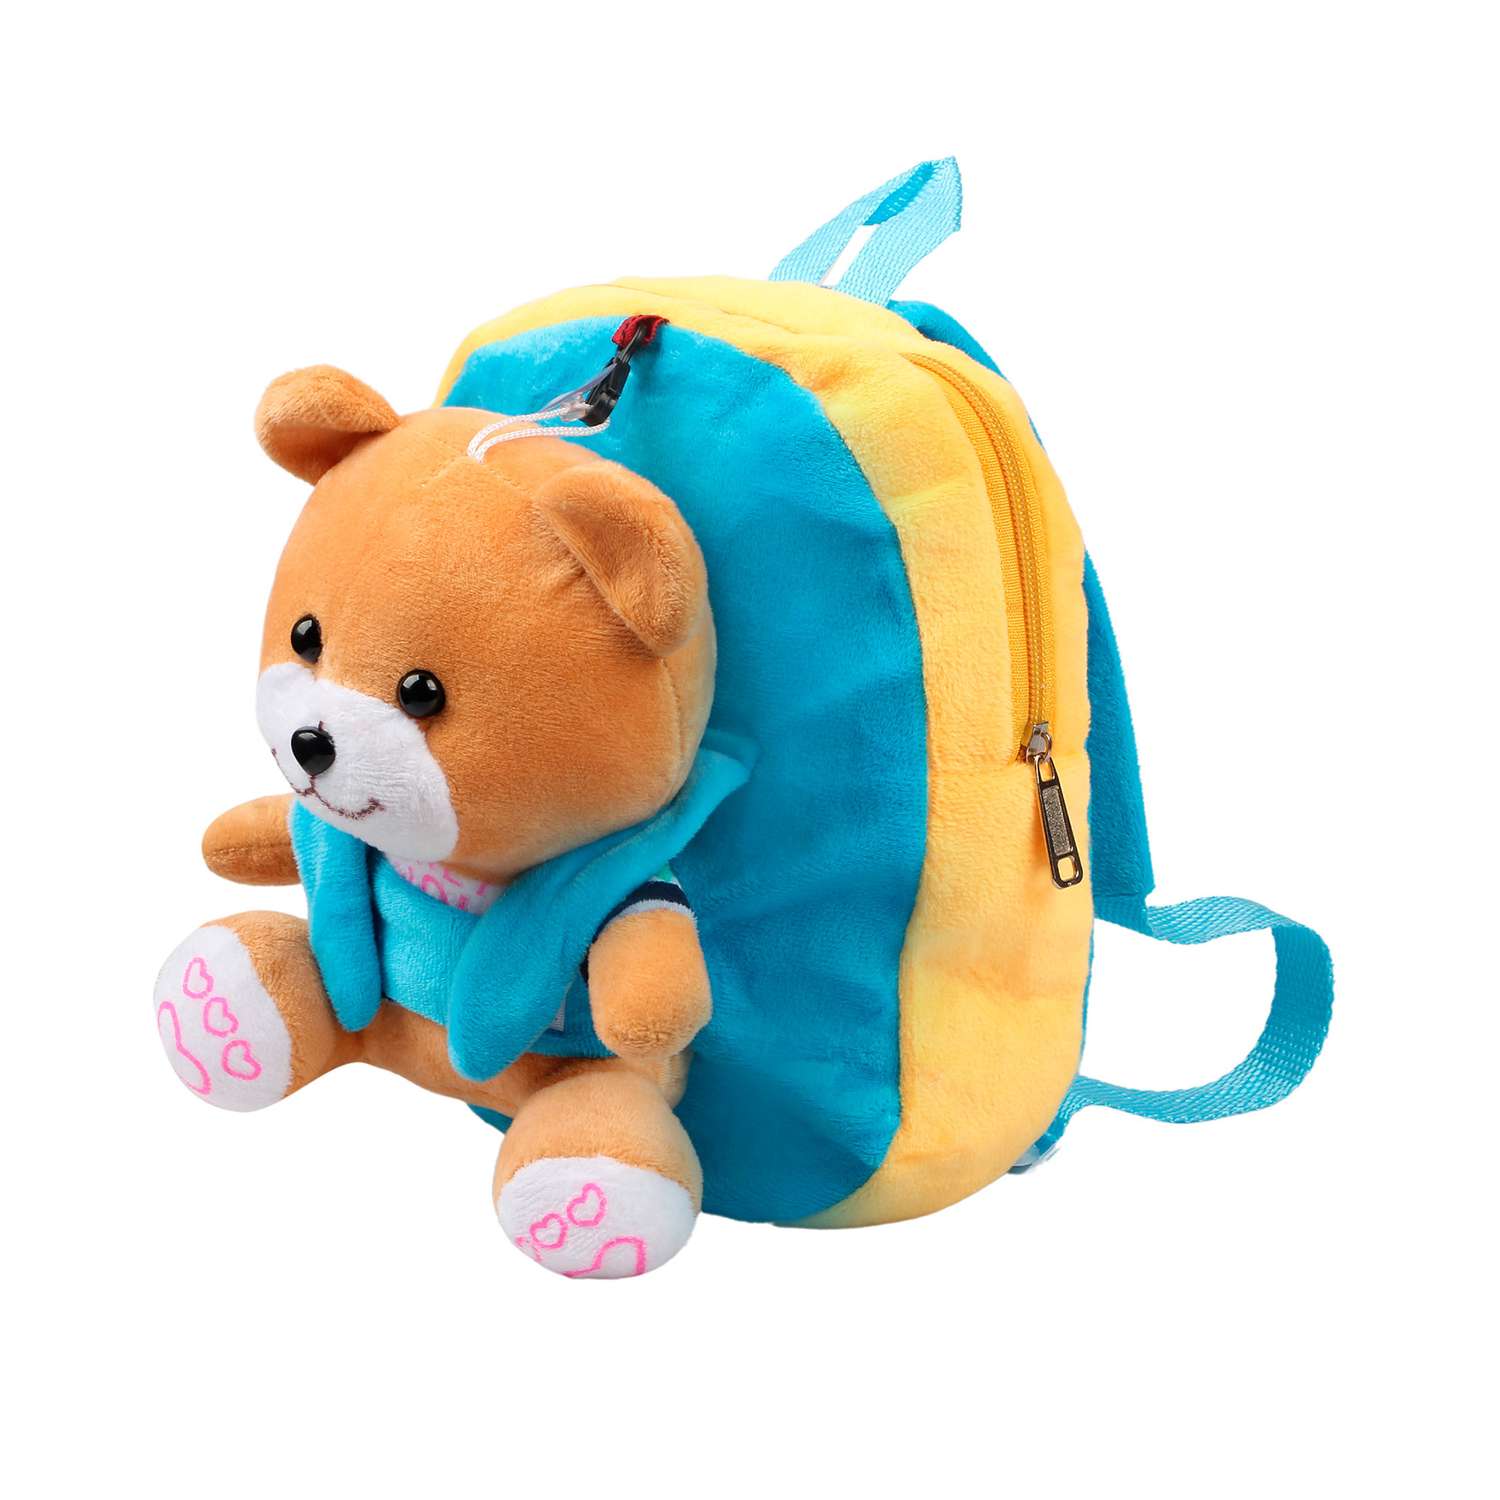 Рюкзак с игрушкой Little Mania желто-голубой Мишка светло-коричневый - фото 2